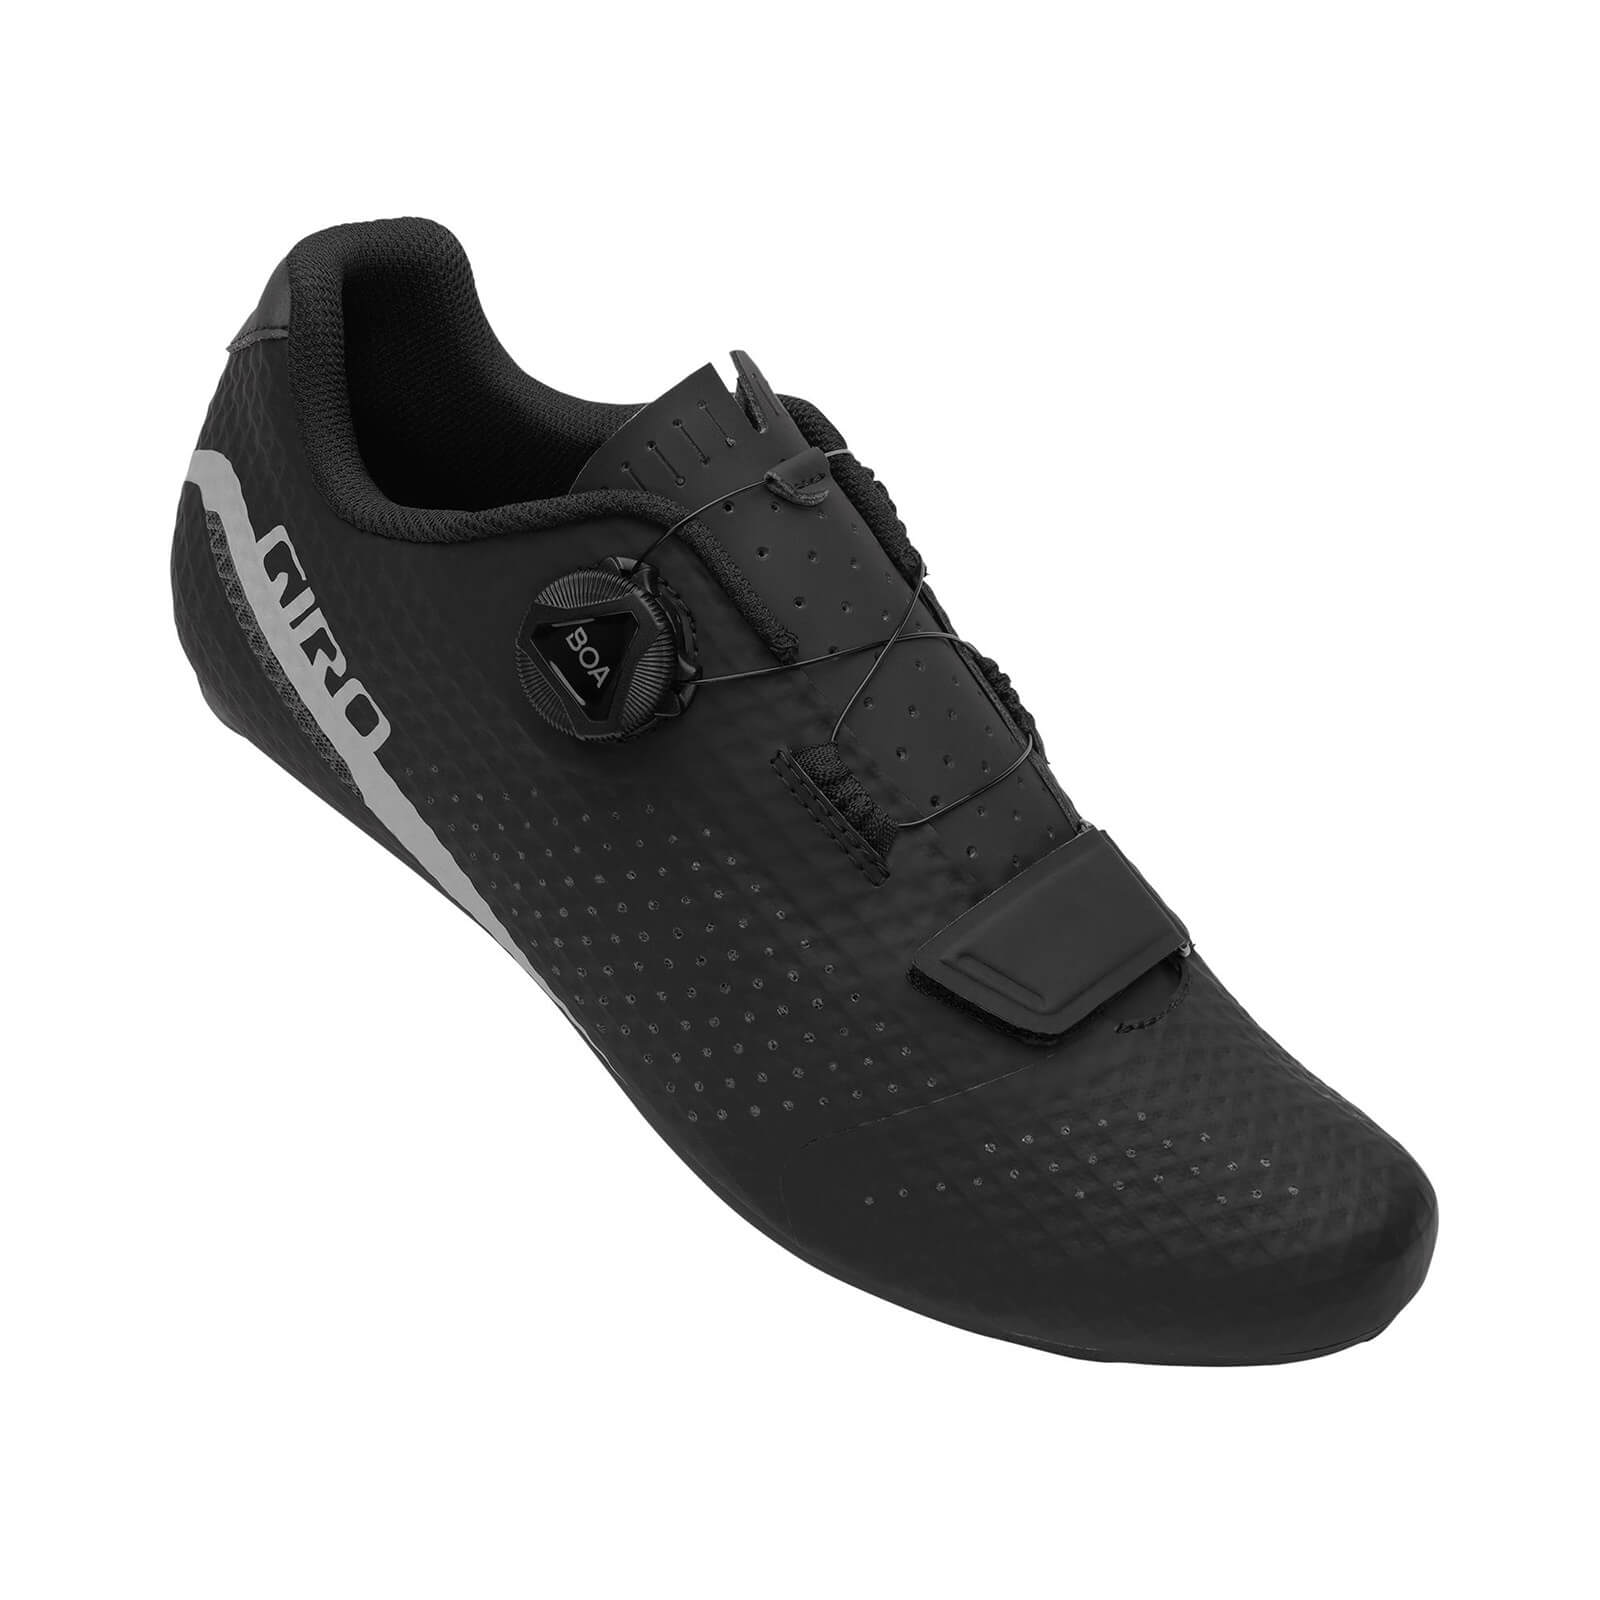 Giro Cadet Road Shoes - EU 44 - Black